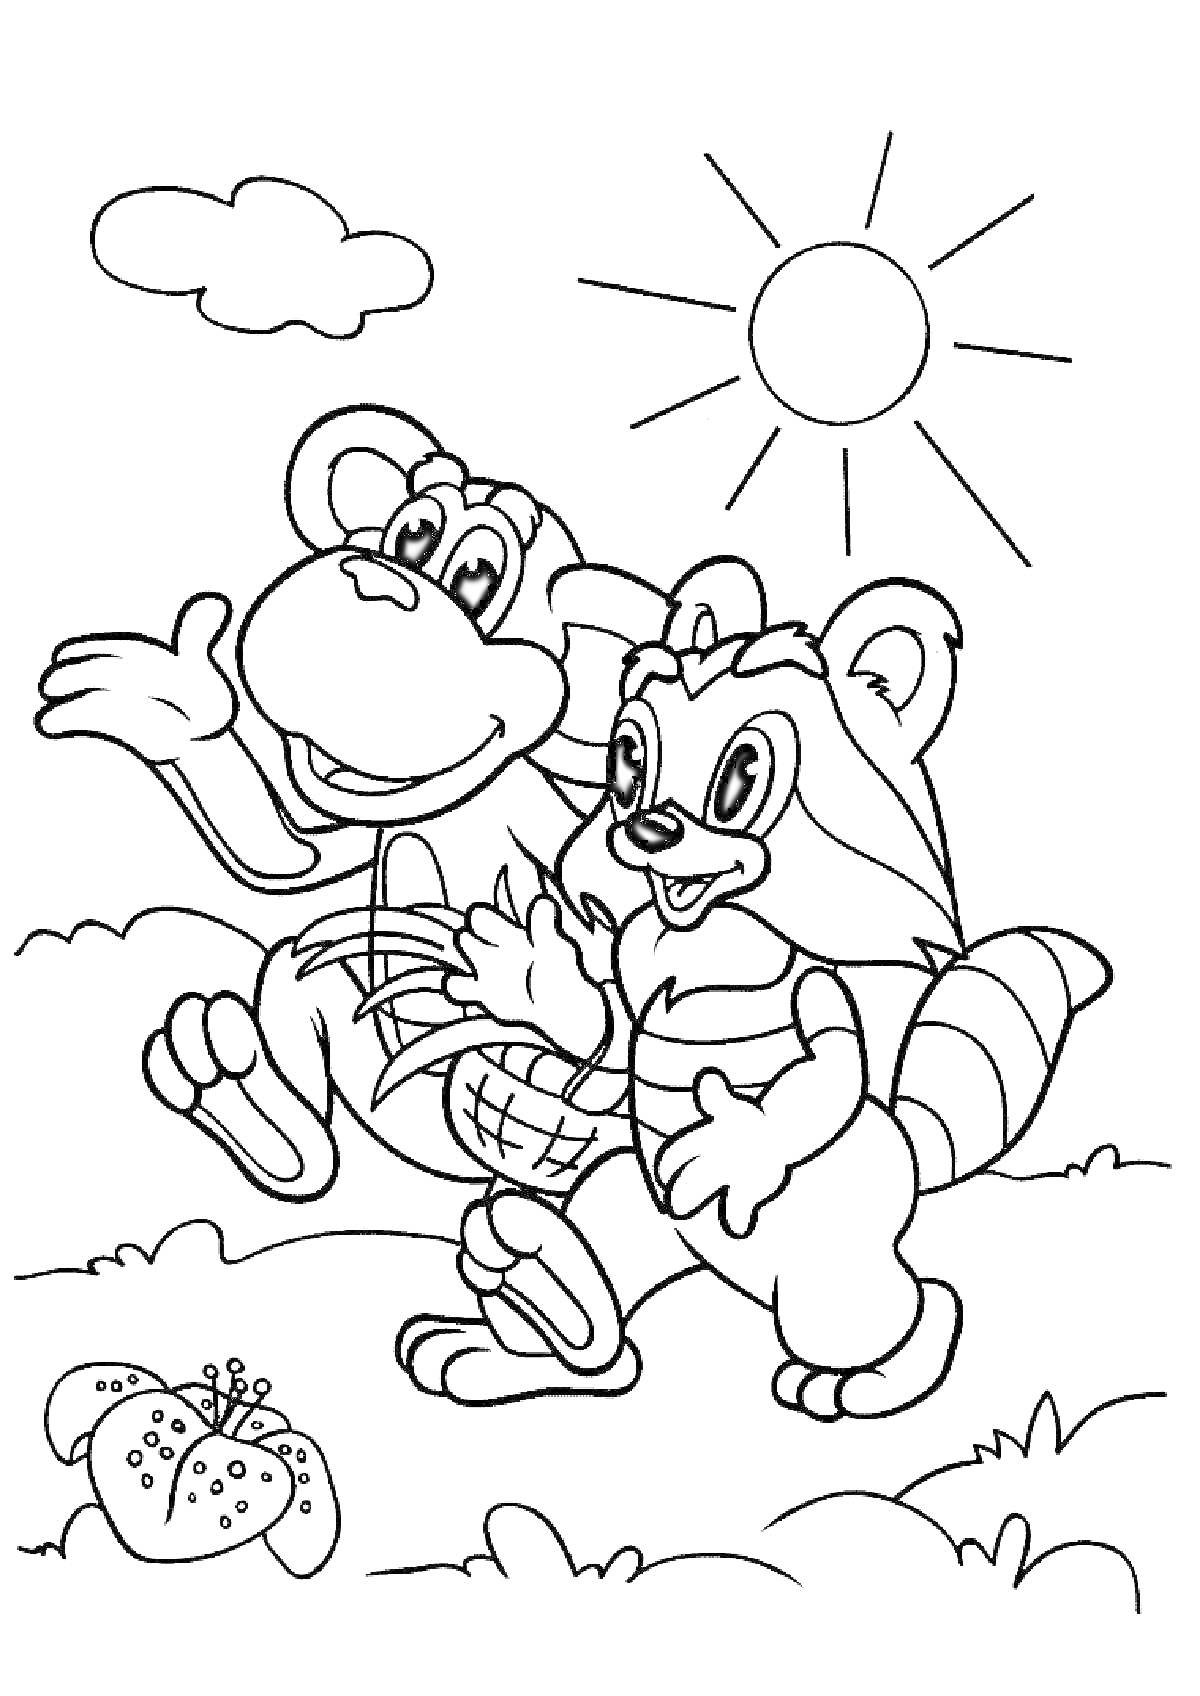 Крошка Енот и обезьянка идут с корзиной травы по полю, на фоне солнечный день с облаками и цветок в траве